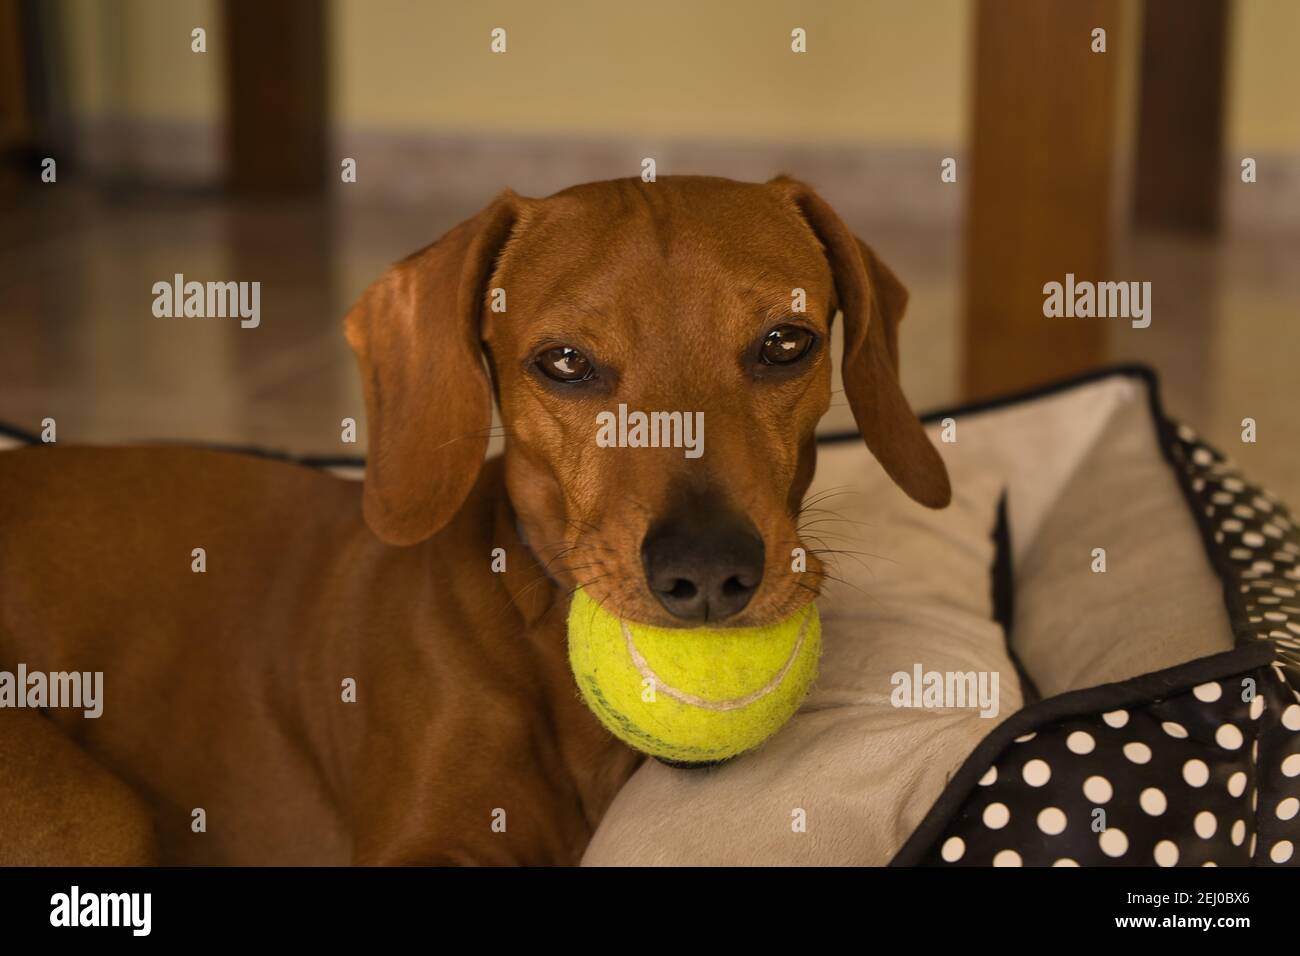 Bellissimo cane dachshund purebred, chiamato anche un dachshund, cane viennese, o cane salsiccia, giocando con una palla da tennis gialla. Cane che gioca Foto Stock